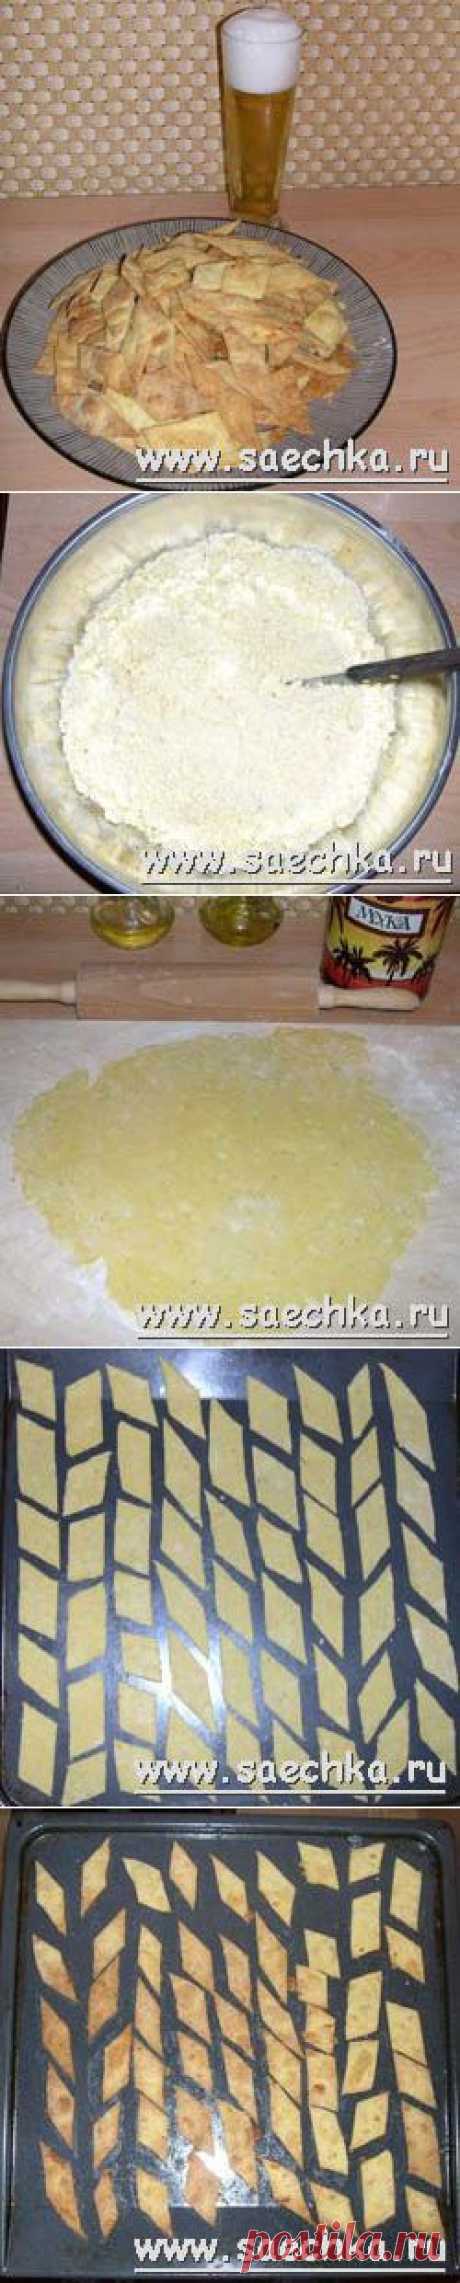 Печенье к пиву | рецепты на Saechka.Ru